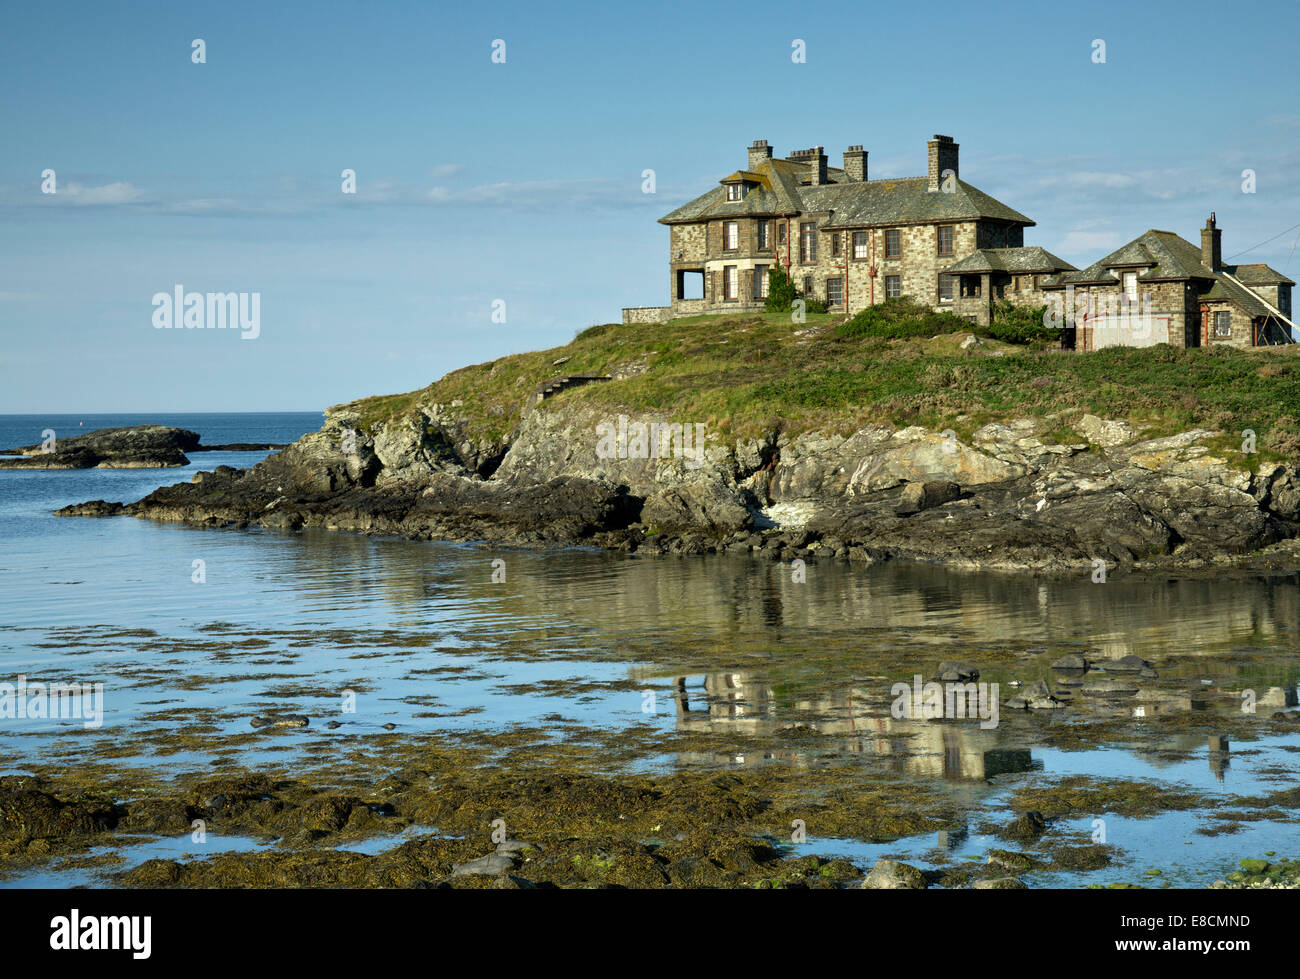 Craigy y Mor La Maison Hantée Trearddur Bay sur la côte ouest de l'île sacrée partie de l'île d'Anglesey (Sir Ynys Mon) Banque D'Images